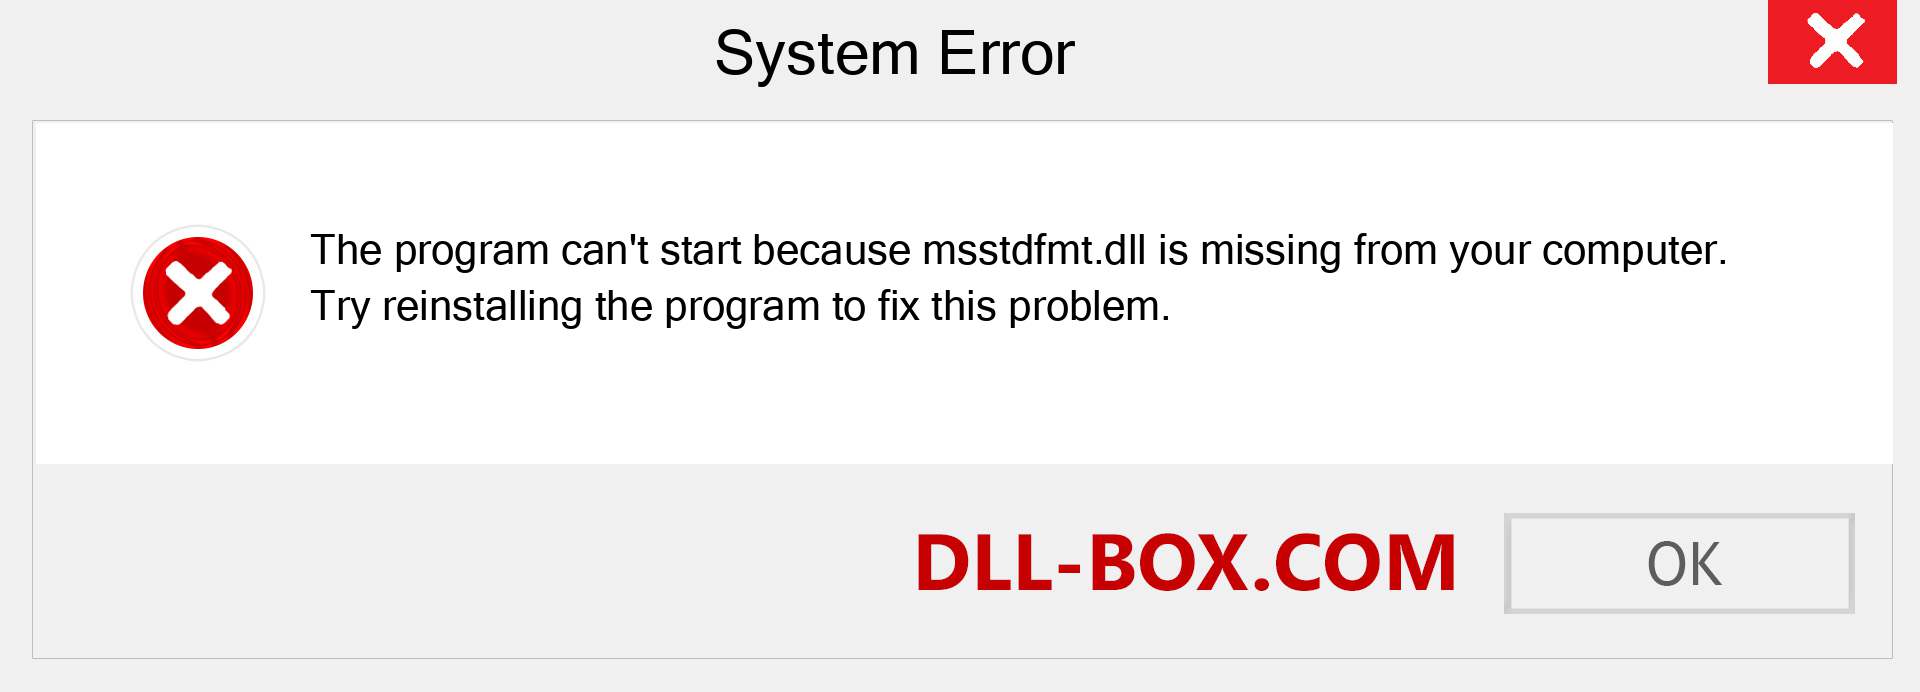  msstdfmt.dll file is missing?. Download for Windows 7, 8, 10 - Fix  msstdfmt dll Missing Error on Windows, photos, images